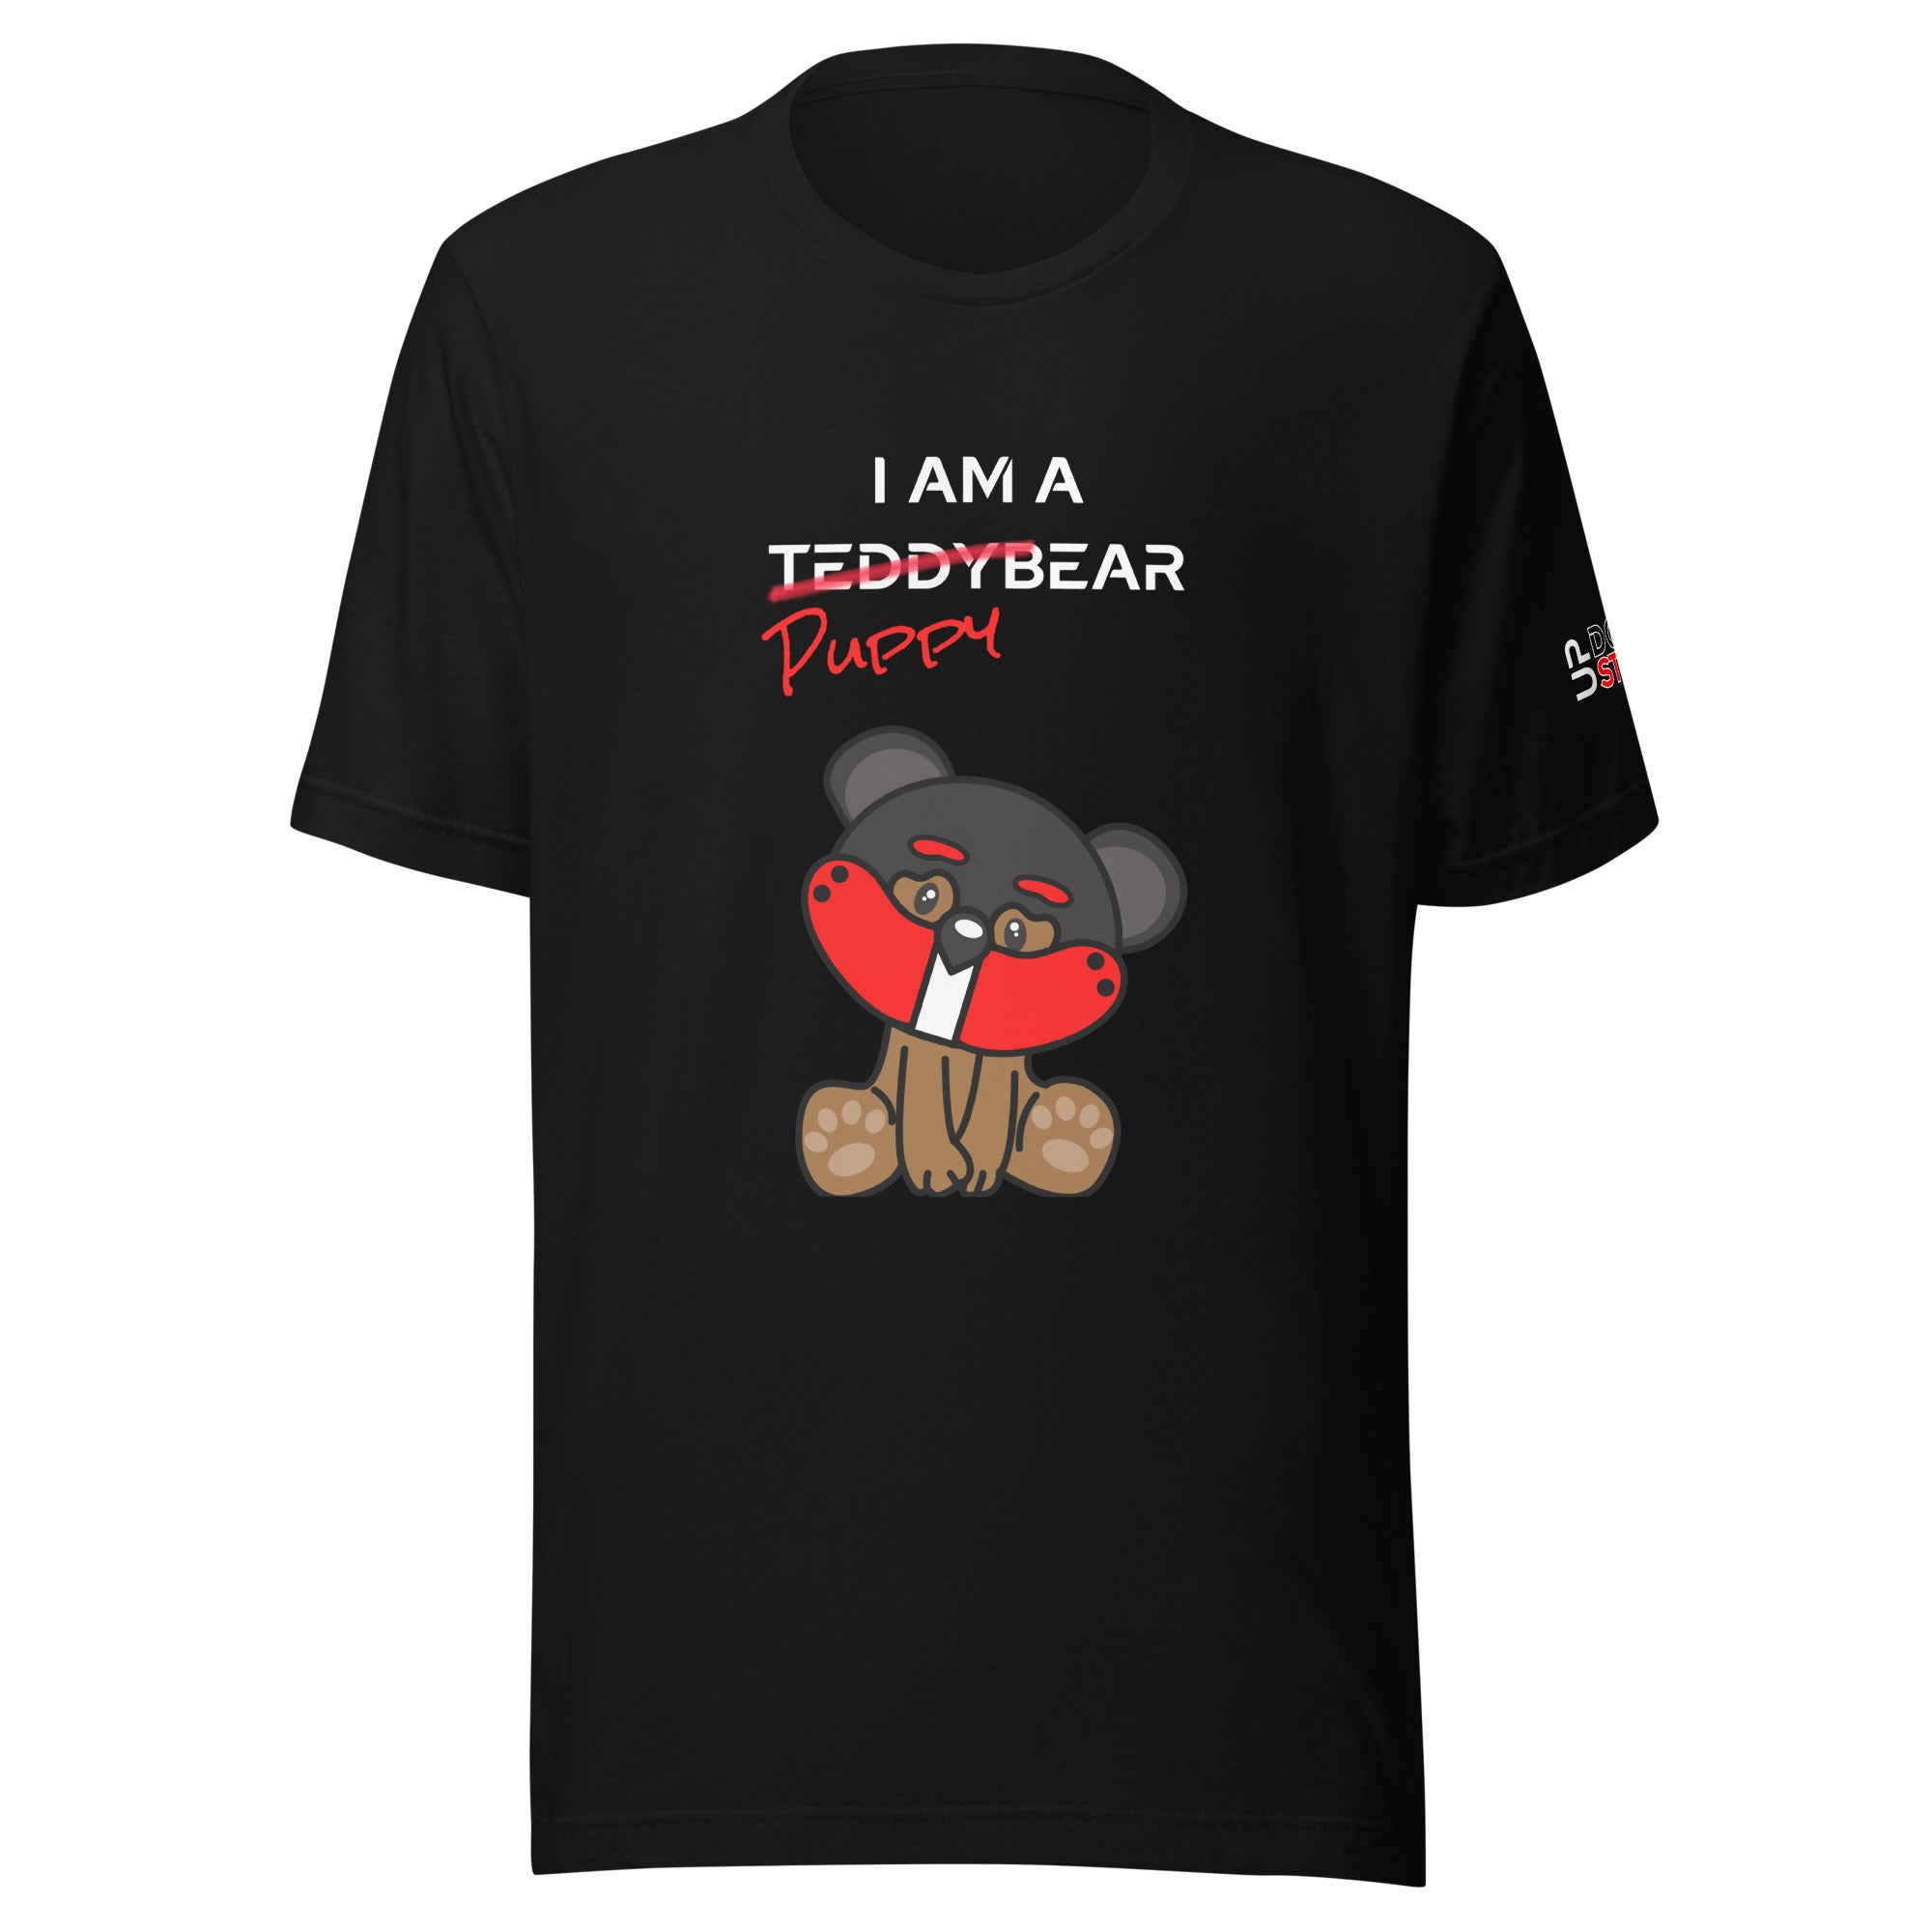 I am a PuppyBear / T-Shirt / Customize